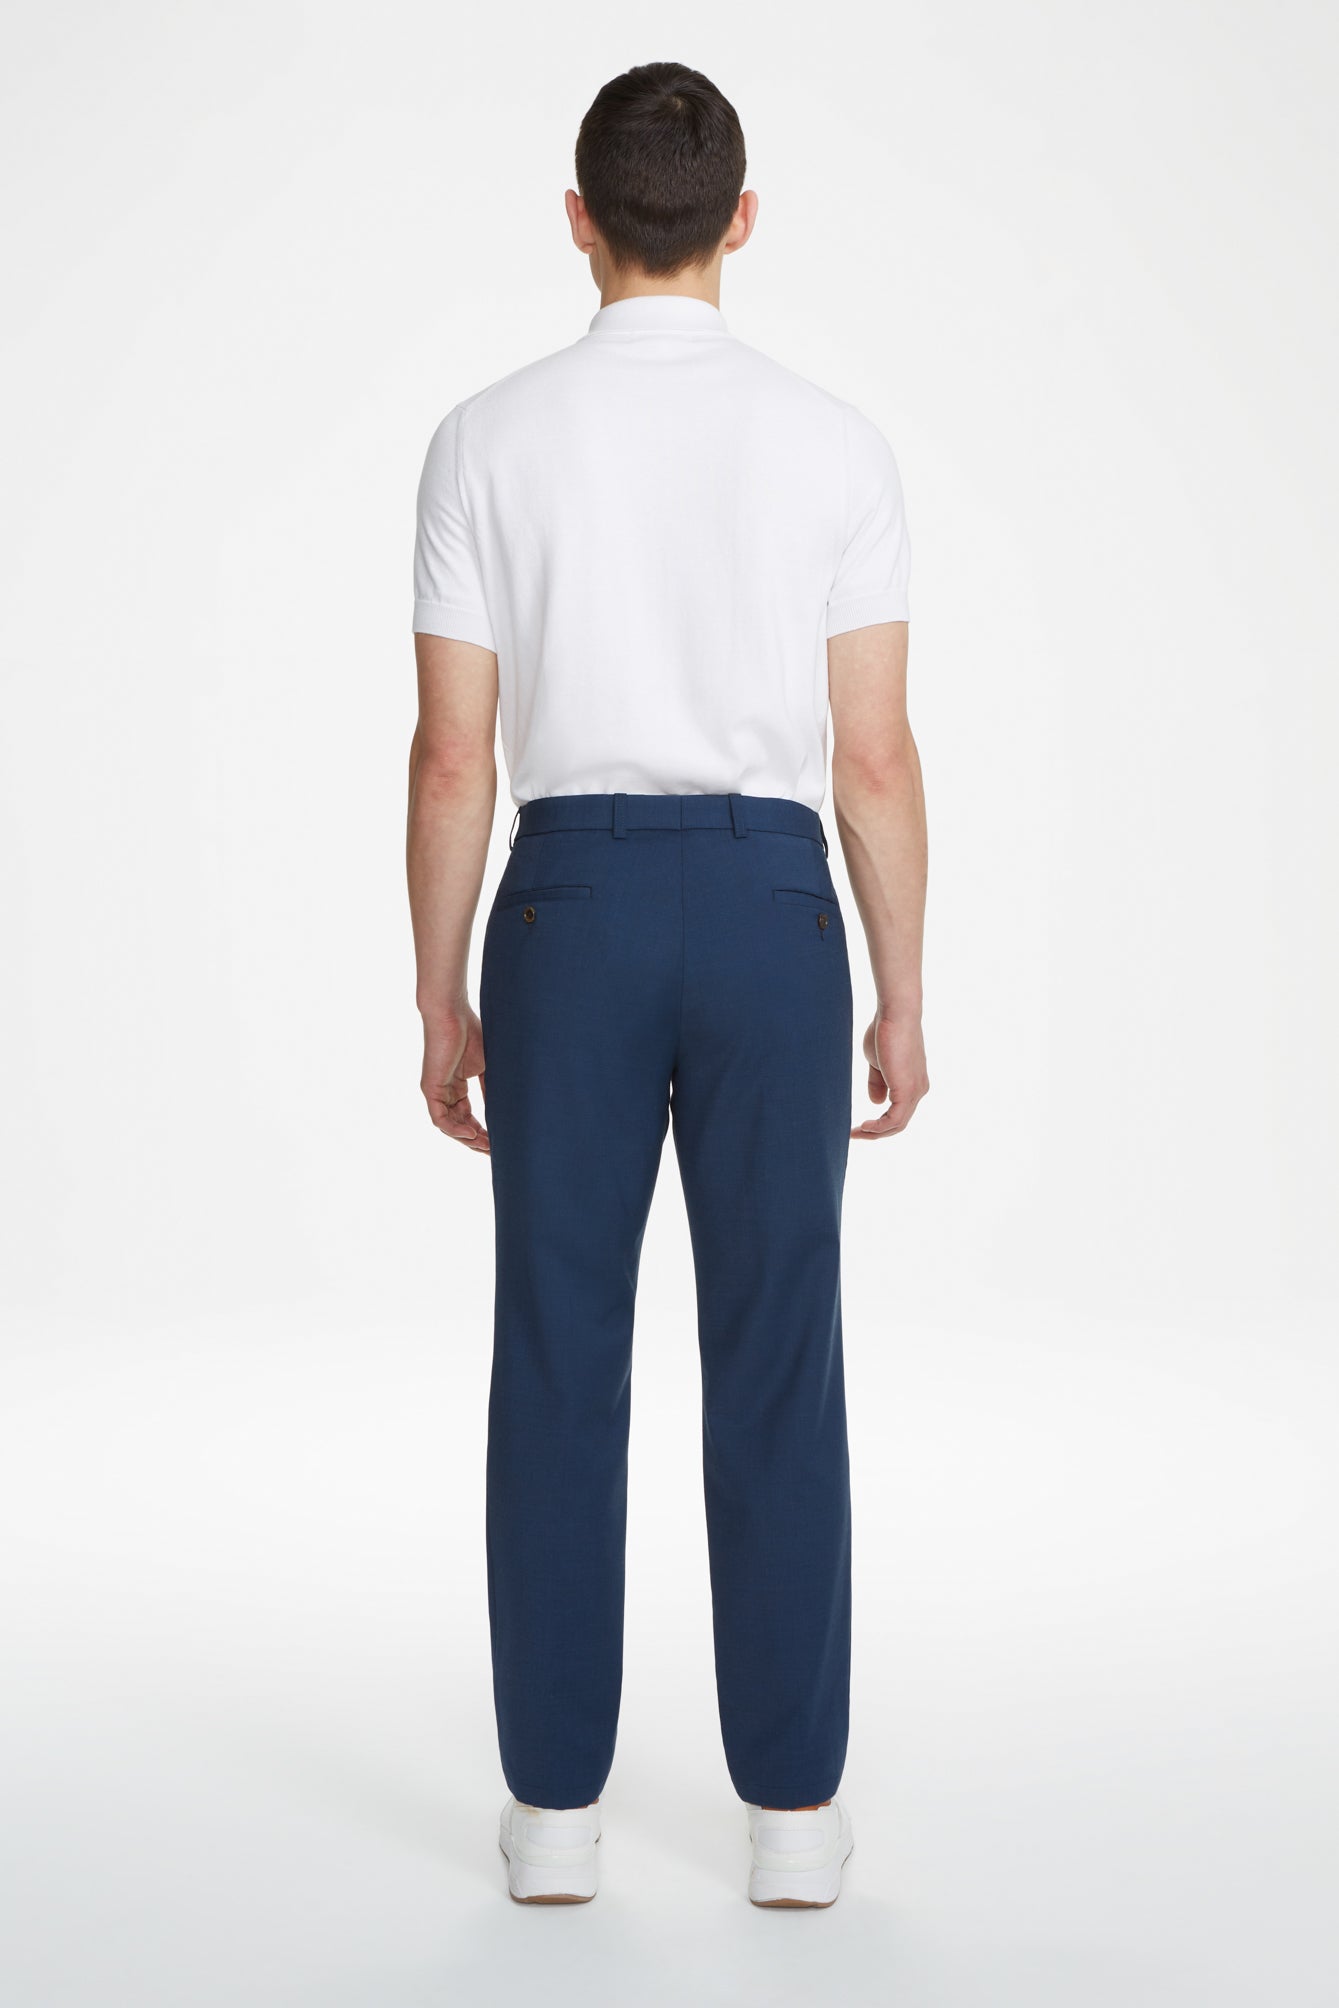 Vue alternative 3 Pantalon de voyage à 5 poches bleu marine uni Sage